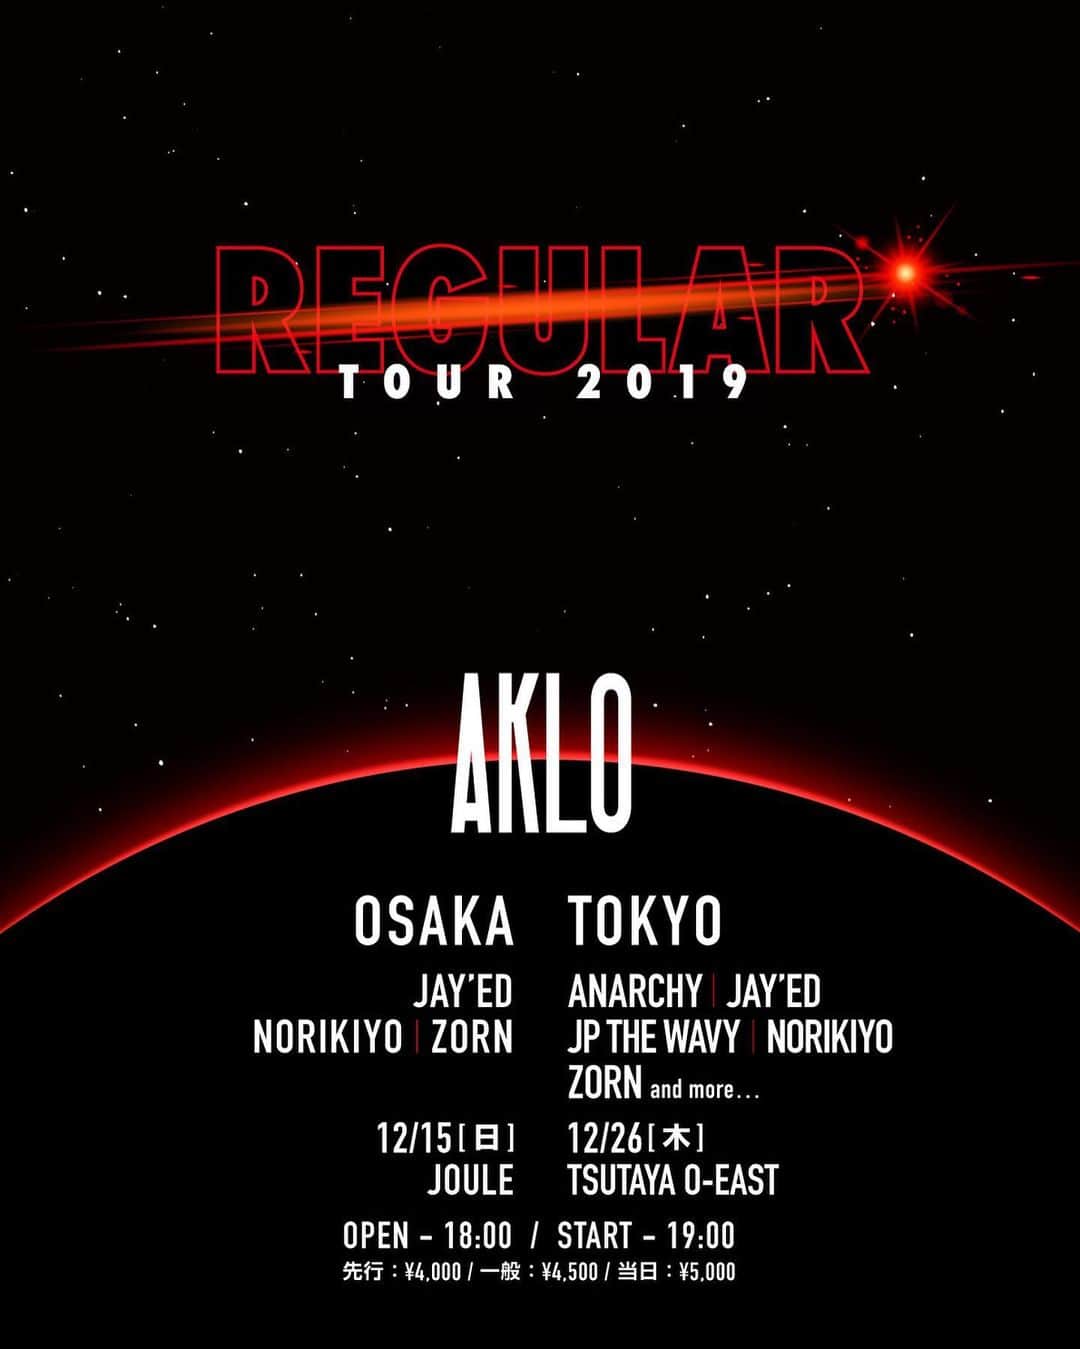 JAY'EDのインスタグラム：「AKLOのニューアルバムリリースに沿って 彼のツアーに参加する事になりました‼️ 10月30日に4枚目のオリジナル・アルバム『REGULAR』のリリースを控えるAKLOが 東京、大阪で単独公演『REGULAR TOUR 2019』を開催。  AKLOが4枚目のオリジナル・アルバム『REGULAR』のリリースに合わせて、 東京、大阪にて久しぶりとなる単独公演『REGULAR TOUR 2019』を開催する事がアナウンスされた。 12月15日(日)にOsaka Jouleで開催される大阪公演にはJAY’ED、NORIKIYO、ZORN。 12月26日(木) TSUTAYA O-EASTでの東京公演にはANARCHY、JAY’ED、JP THE WAVY、NORIKIYO、ZORN、のゲスト出演が決定。 。  尚、前売りチケットの先行販売はアルバム『REGULAR』の発売日でもある10月30日(水)の19:00より各プレイガイドで販売される。  また、本日よりiTunes /Apple Musicではアルバム『REGULAR』のPre-Order / Pre-Addもスタート。 ライブラリに先行追加し、アップデートをチェックしよう！ ▷公演概要 『REGULAR TOUR 2019』  日時：2019年12月15日(日) 会場：CLUB JOULE (OSAKA) 〒542-0086 大阪市中央区西心斎橋2-11-7　南炭屋町ビル2-4F 開場：18:00 / 開演：19:00 料金 ： 先行4000円 一般4500円 当日5000円 (全て別ドリ) 出演者：AKLO, JAY’ED, NORIKIYO, ZORN and more … 問い合わせ先：CLUB JOULE  日時：2019年12月26日(木) 会場：TSUTAYA O-EAST 〒150-0043 東京都渋谷区道玄坂２丁目１４−８ 開場：18:00 / 開演：19:00 料金 ： 先行4000円 一般4500円 当日5000円 (全て別ドリ) 出演者：AKLO, ANARCHY, JAY’ED, JP THE WAVY, NORIKIYO, ZORN and more … 問い合わせ先：TSUTAYA O-EAST ▷商品詳細 アーティスト名:AKLO  タイトル:REGULAR  フォーマット:CD レーベル: Studio A  品番:SKL-001  価格:2800円(税込)  発売日:2019年10月30日(水)」